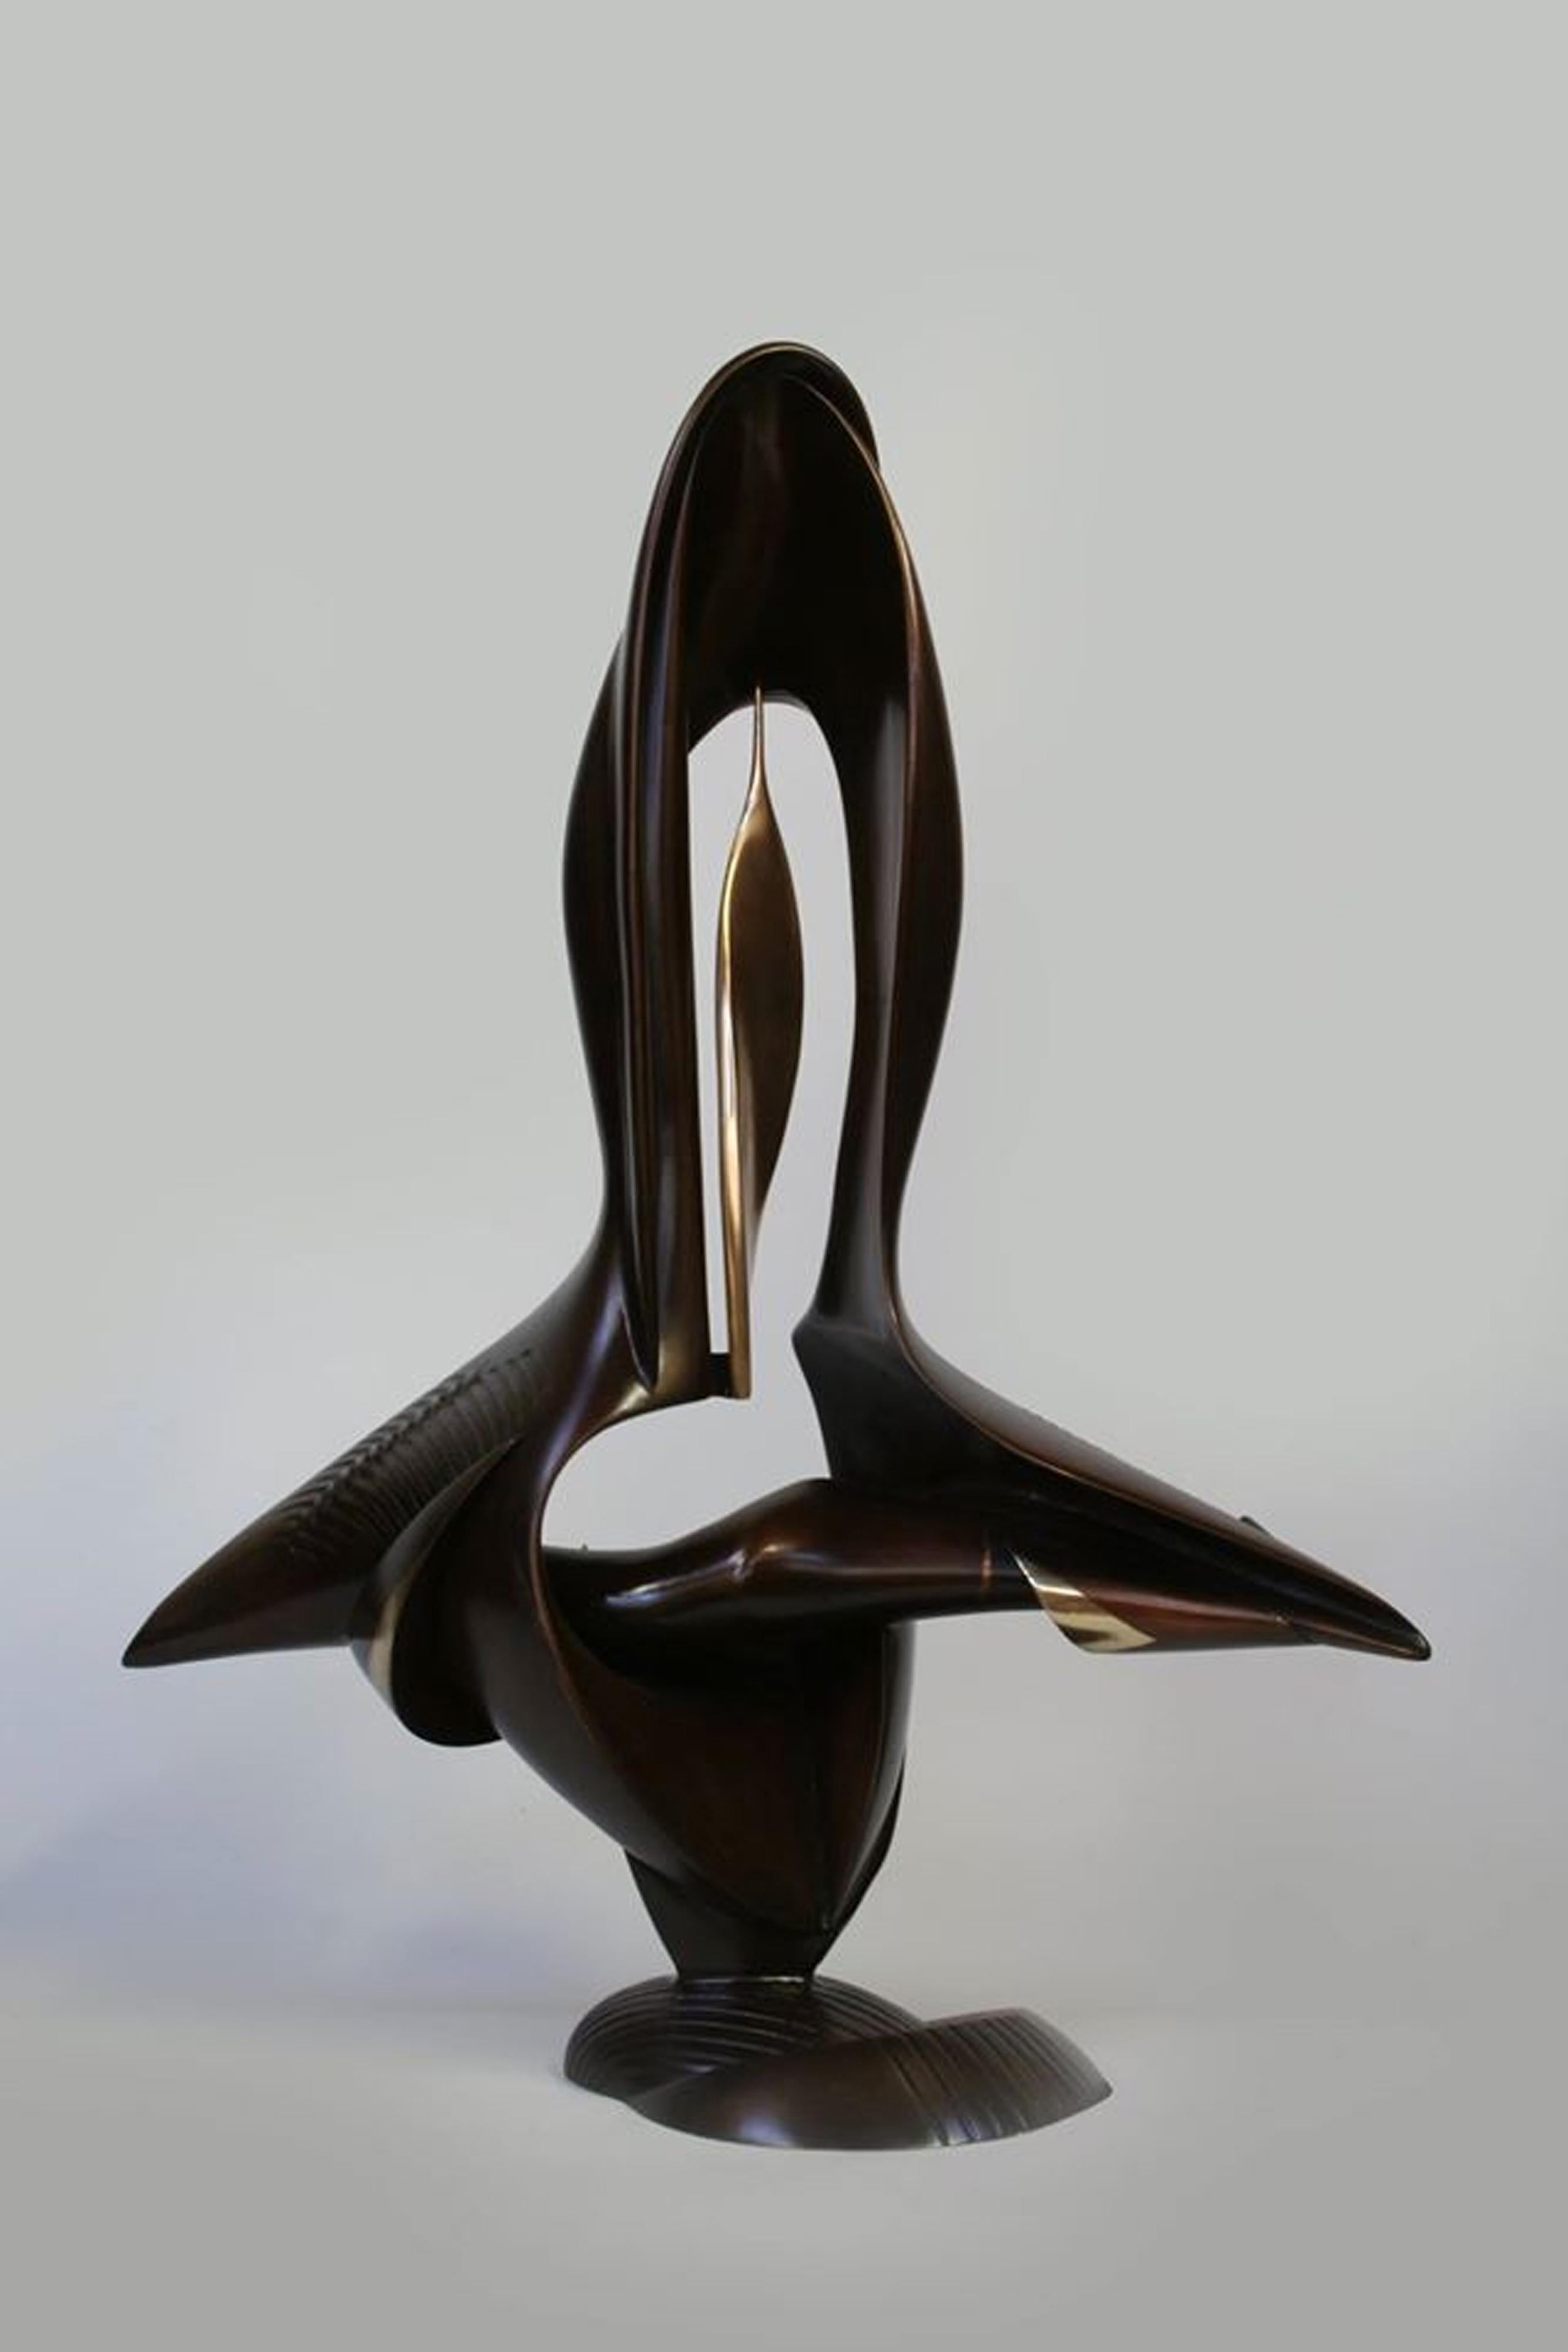 OASIS – Sculpture von Yevgeniy Prokopov